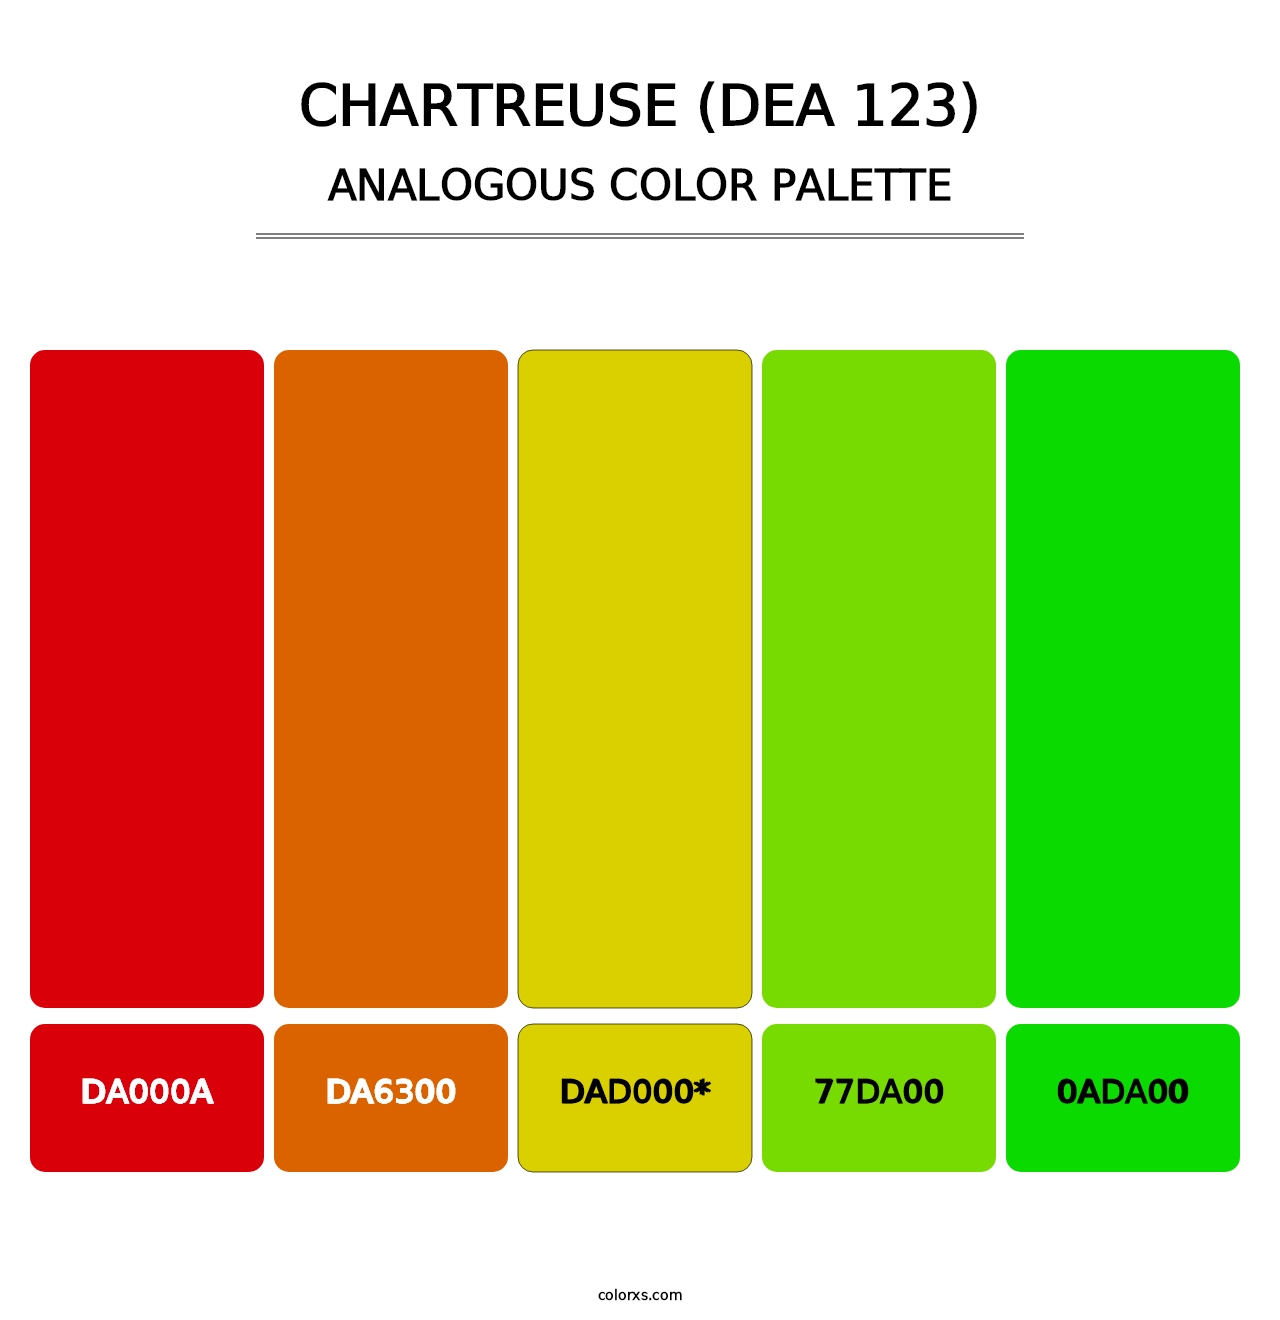 Chartreuse (DEA 123) - Analogous Color Palette